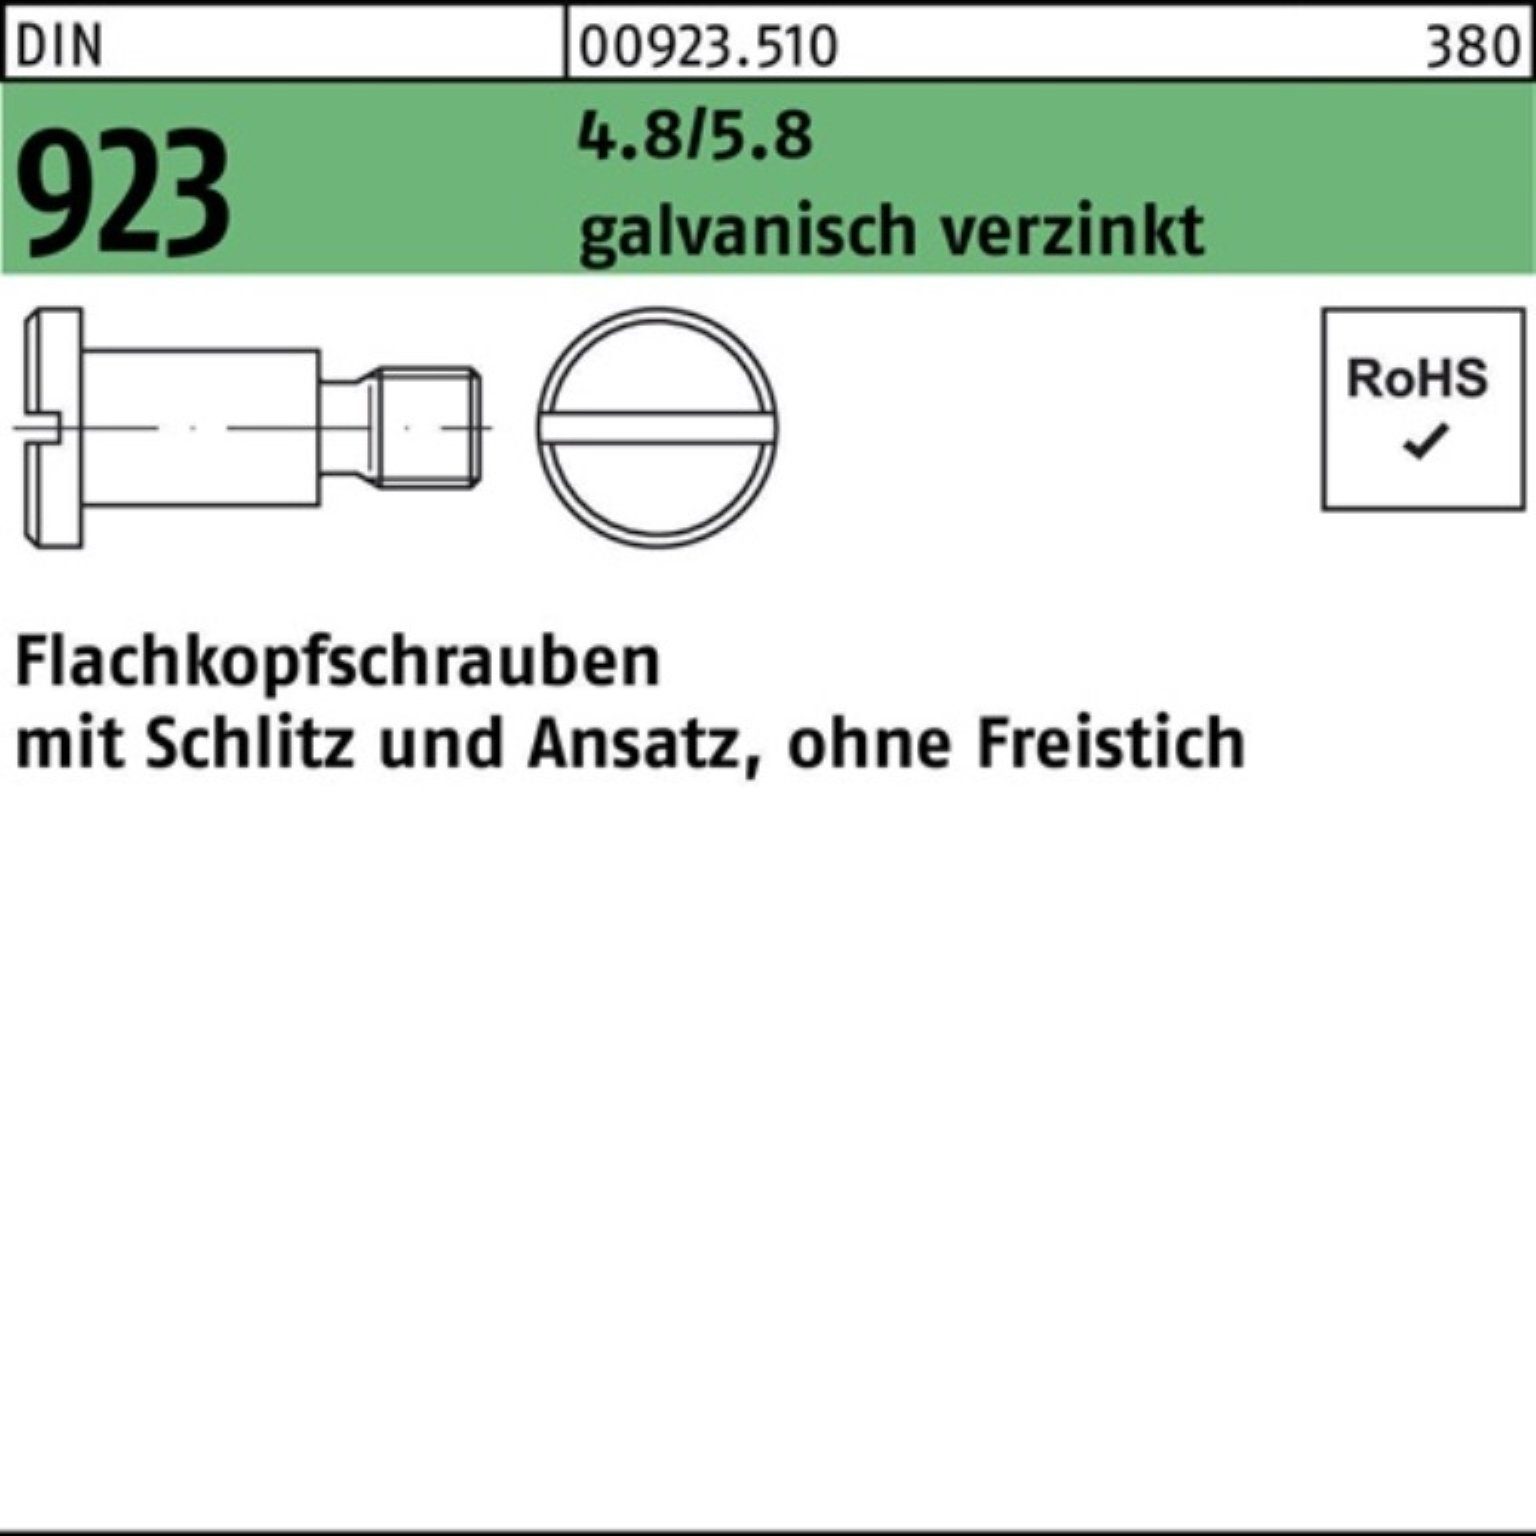 Reyher Schraube 100er Pack Flachkopfschraube DIN 923 Schlitz/Ansatz M8x10x11,0 4.8/5.8